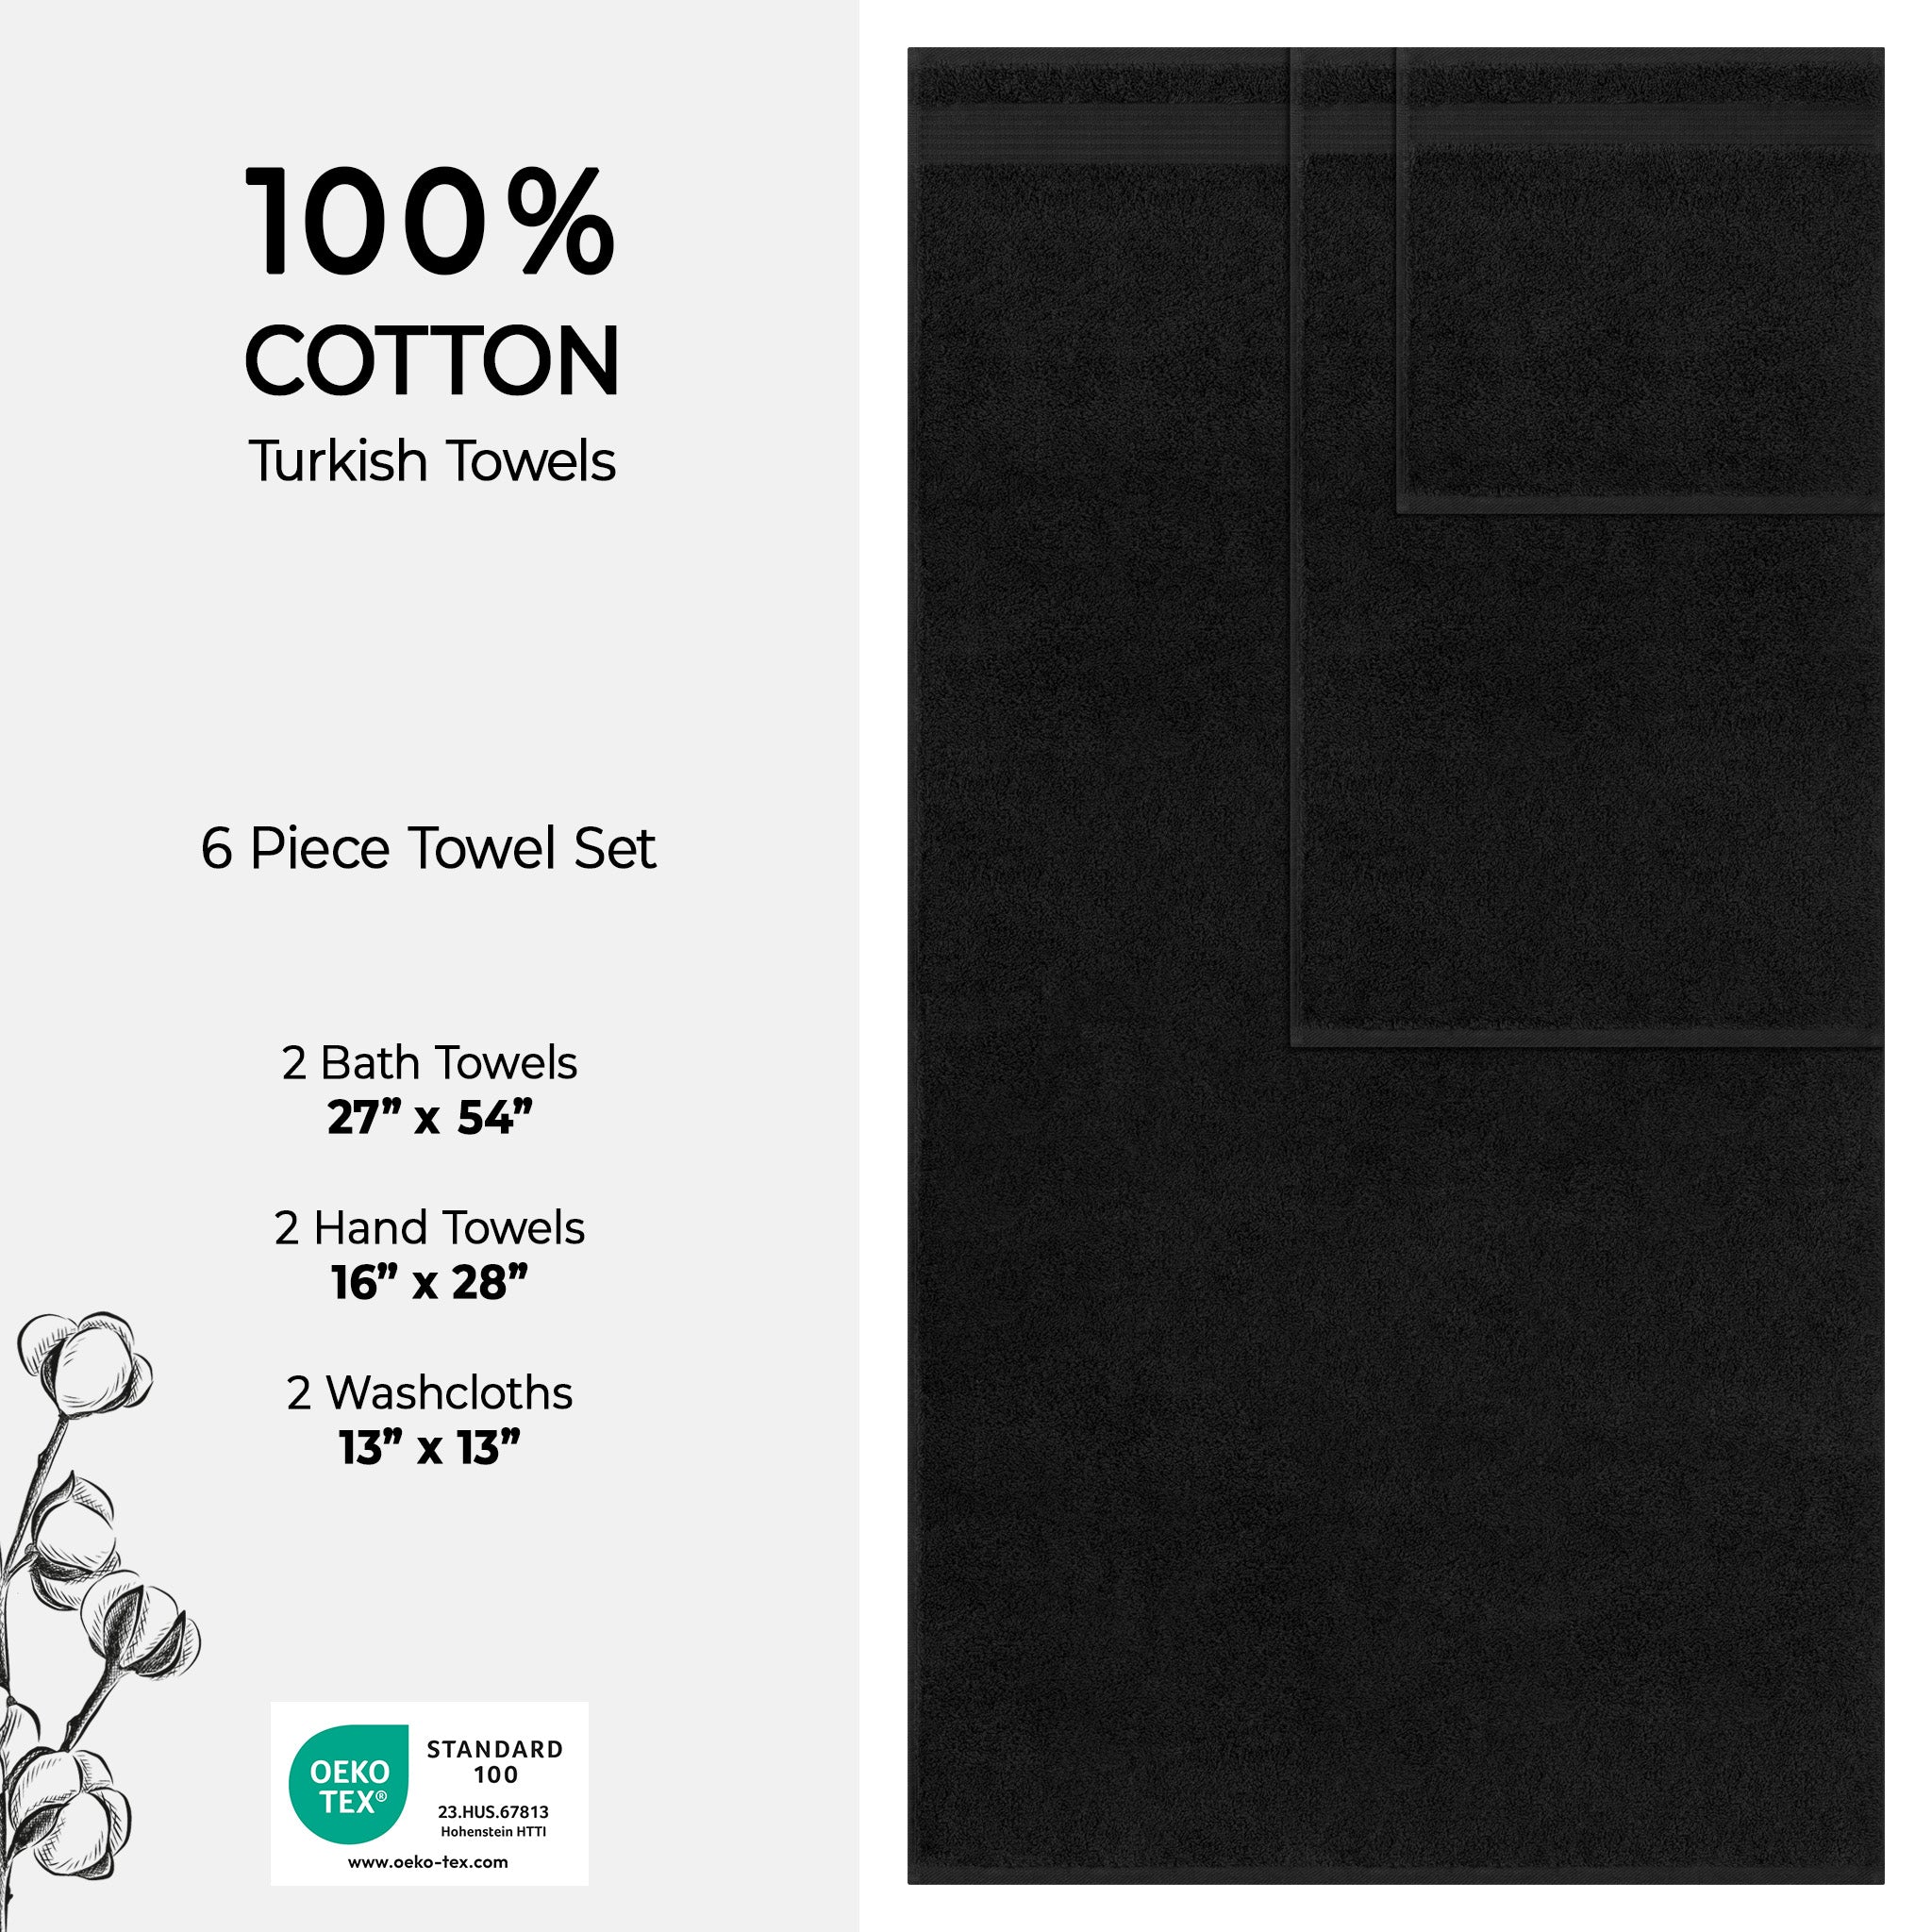 American Soft Linen Bekos 100% Cotton Turkish Towels 6 Piece Bath Towel Set -black-04